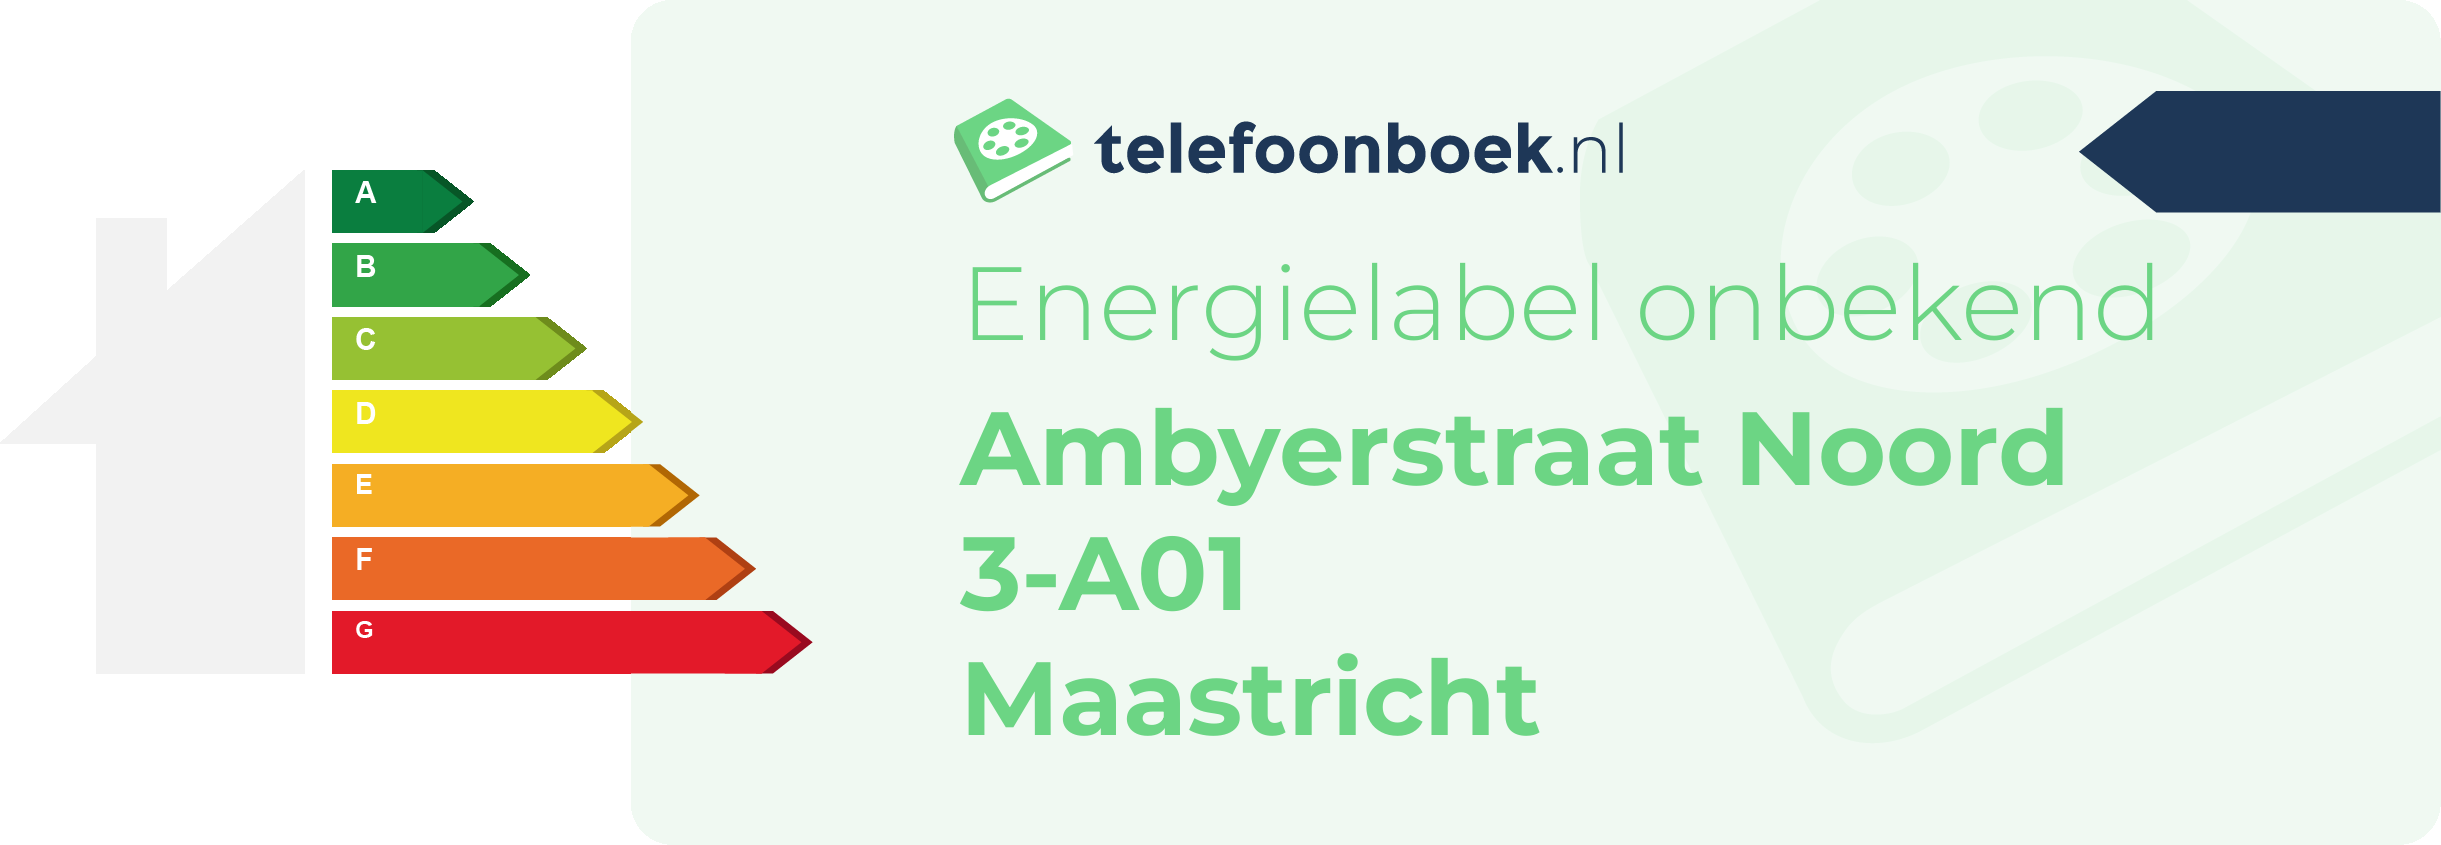 Energielabel Ambyerstraat Noord 3-A01 Maastricht